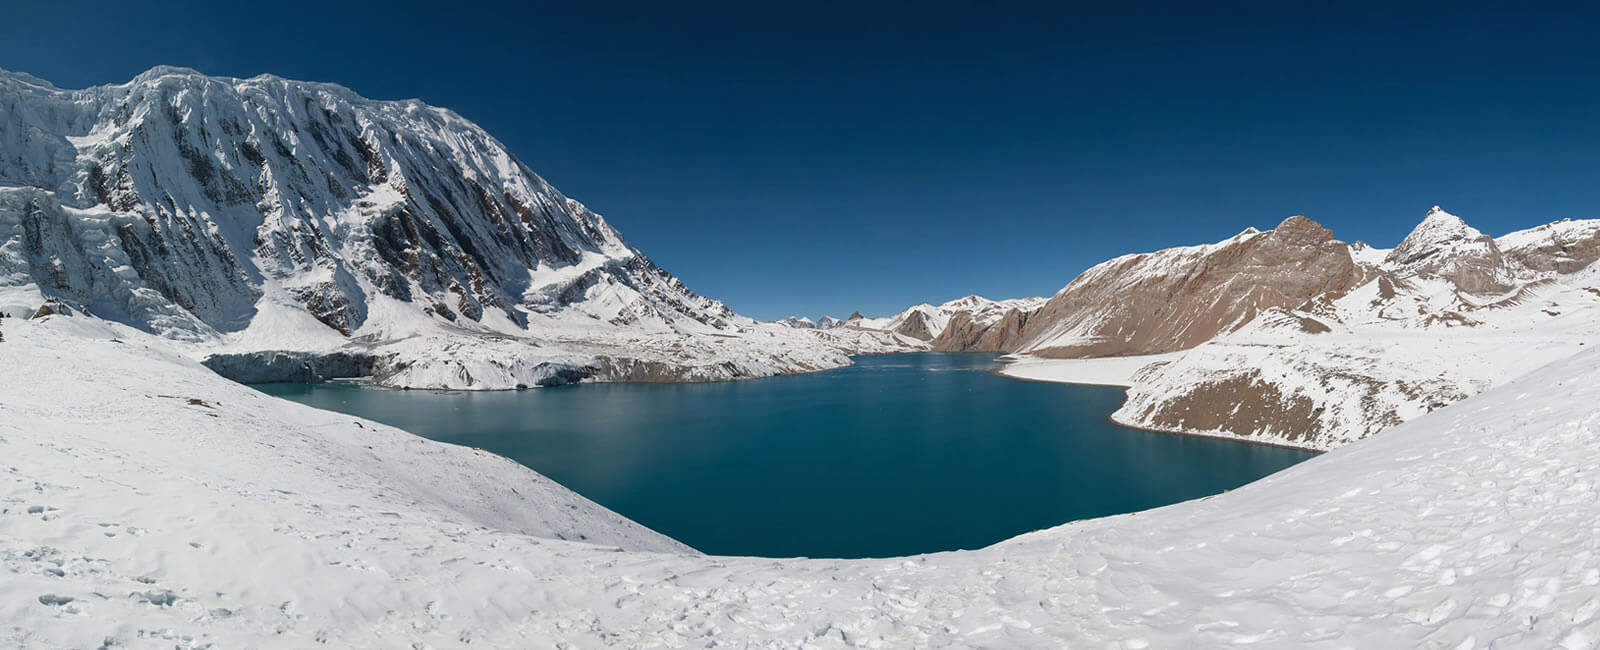 Tilicho lake in Nepal 